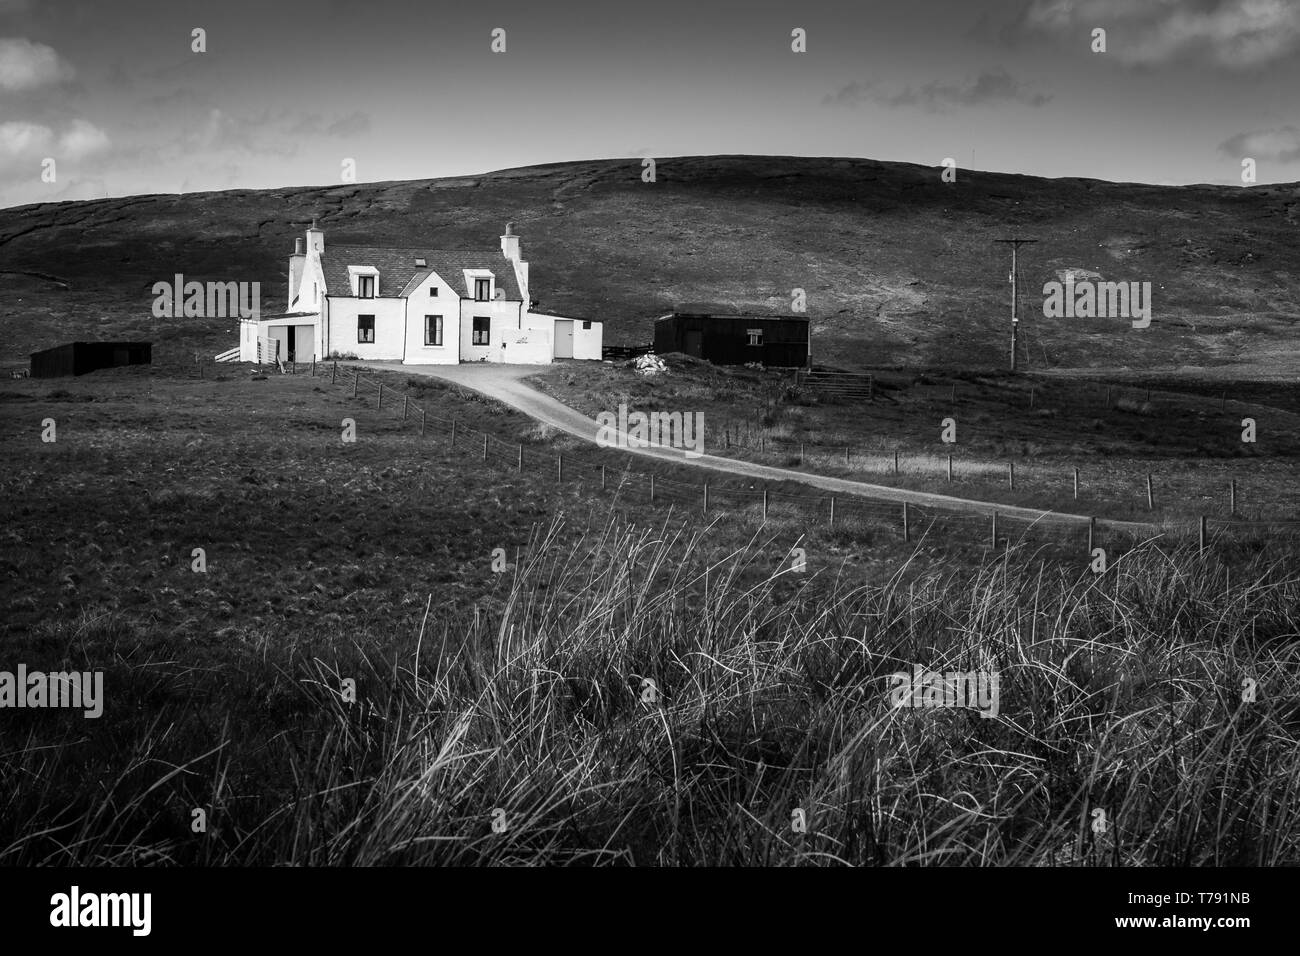 Accueil à distance dans les îles Shetland, au nord de l'Écosse, au Royaume-Uni. Banque D'Images